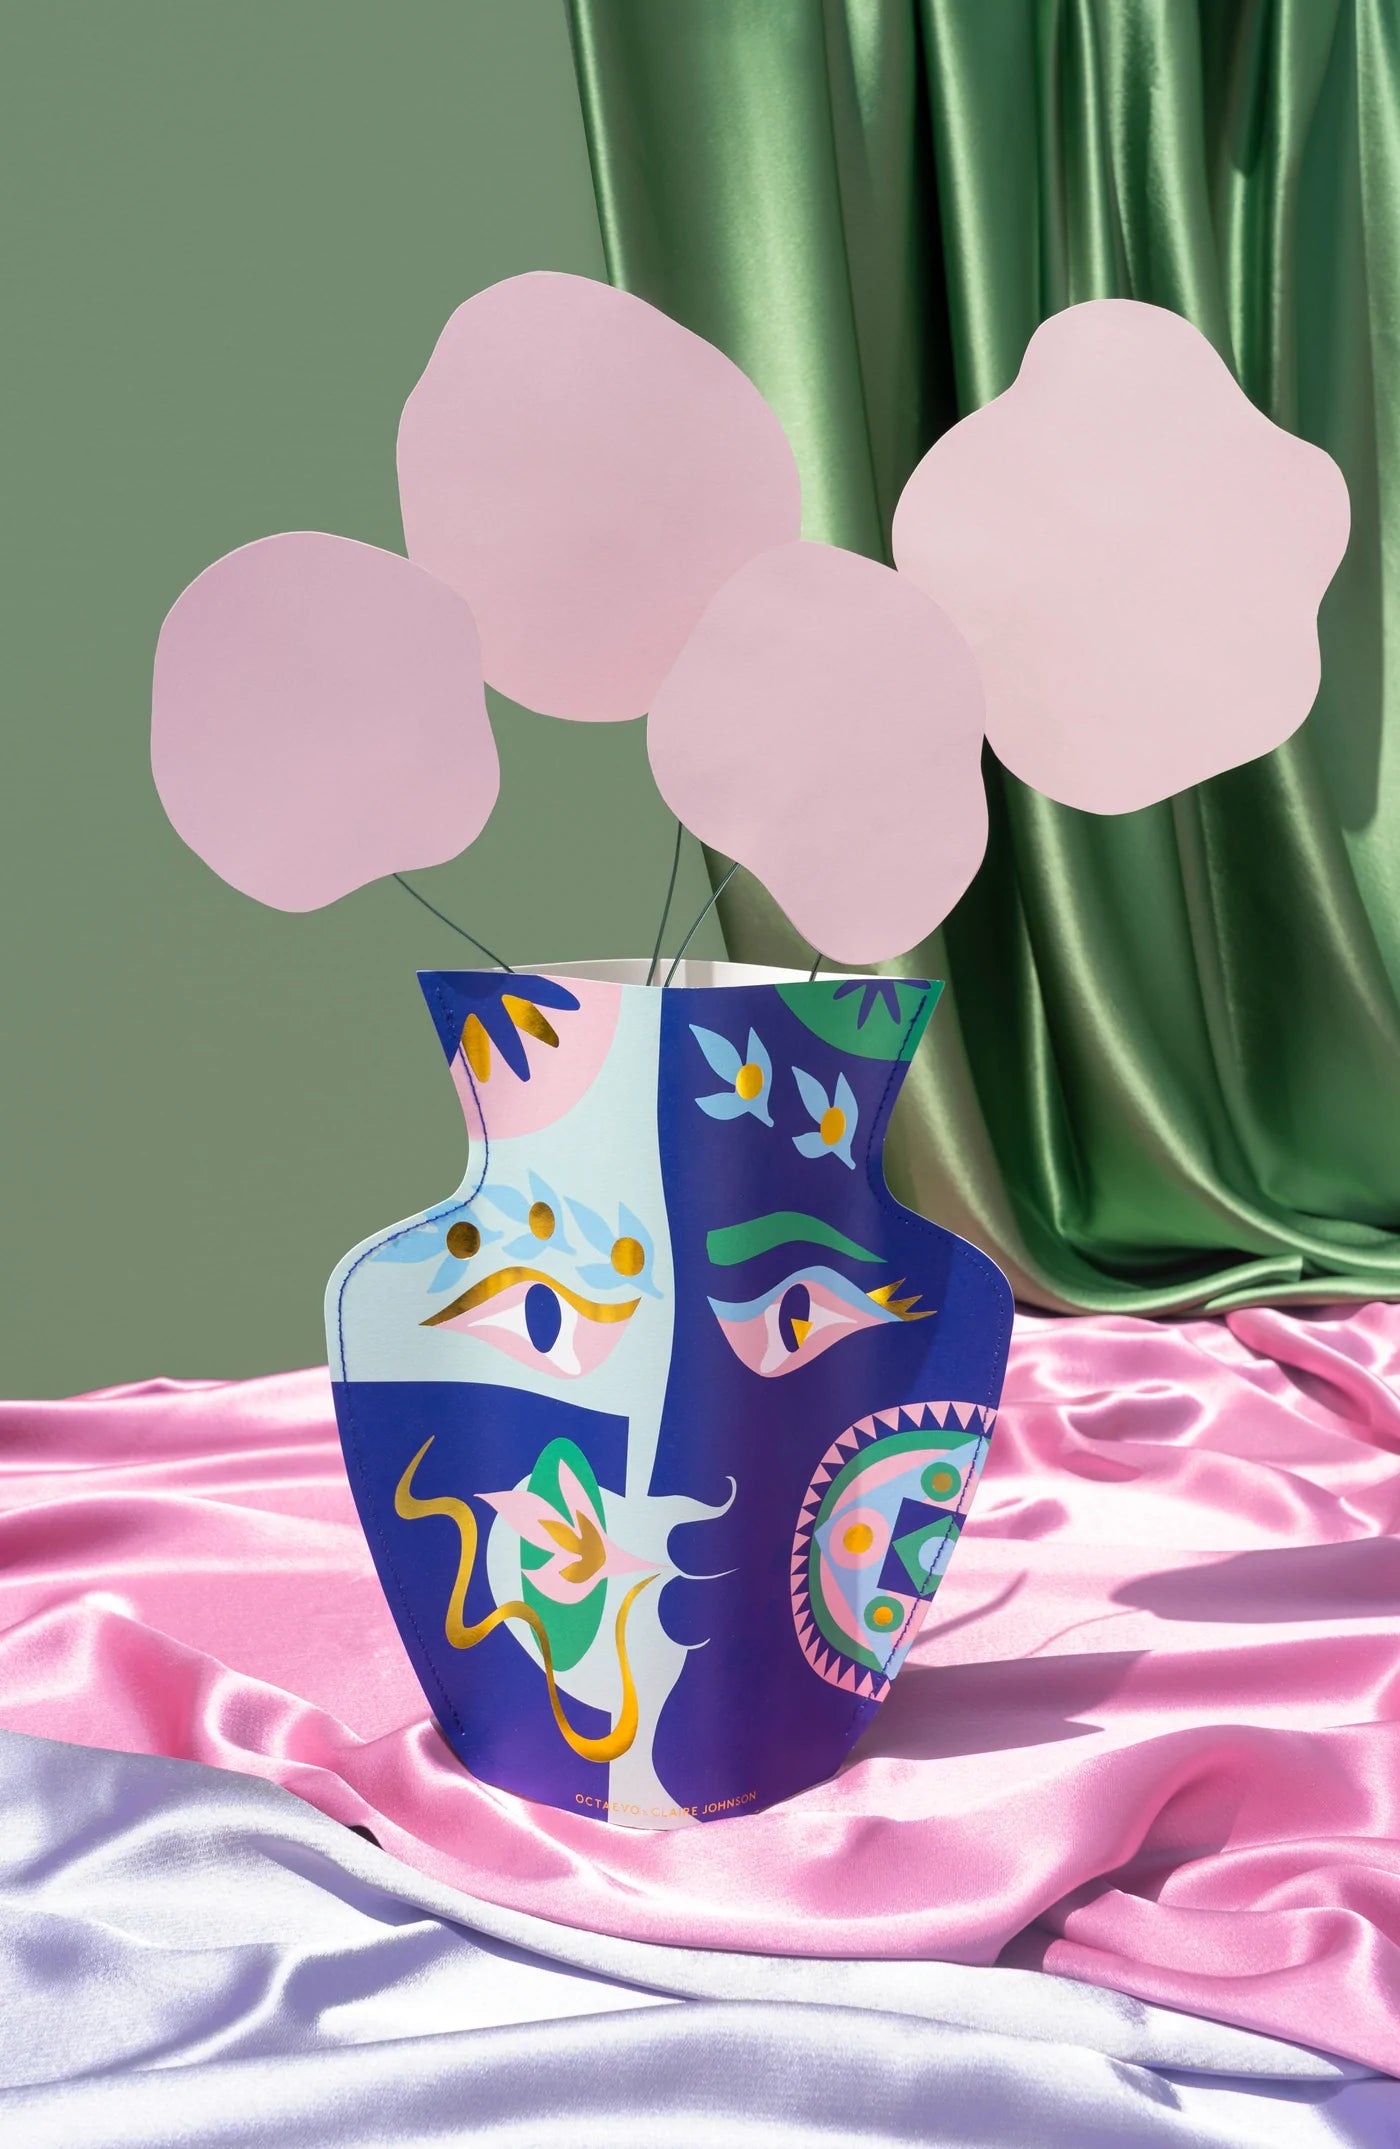 Papírová váza s ilustrací od umělkyně Claire Johnson značky OCTAEVO